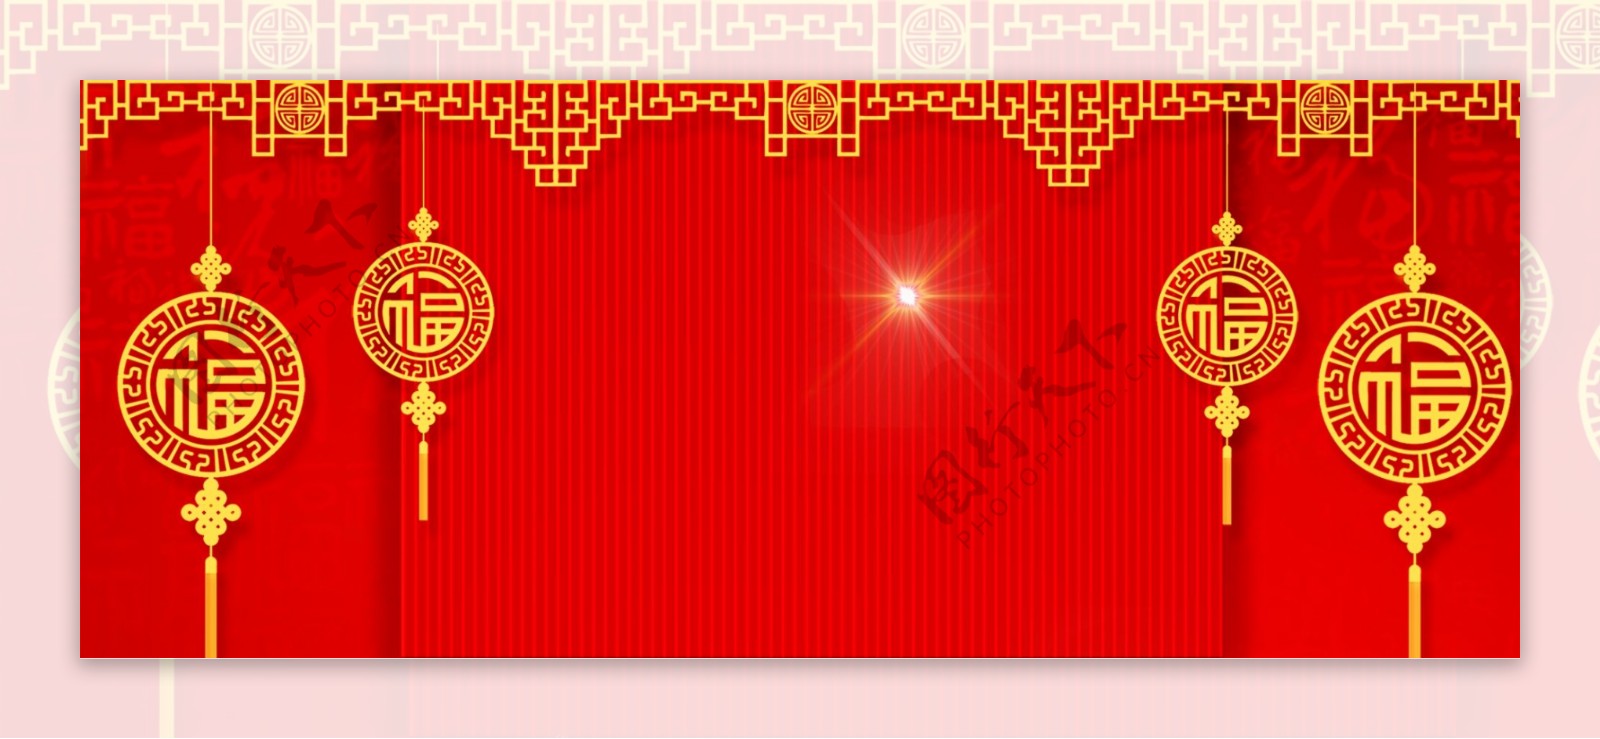 中国年2019新春元旦banner背景